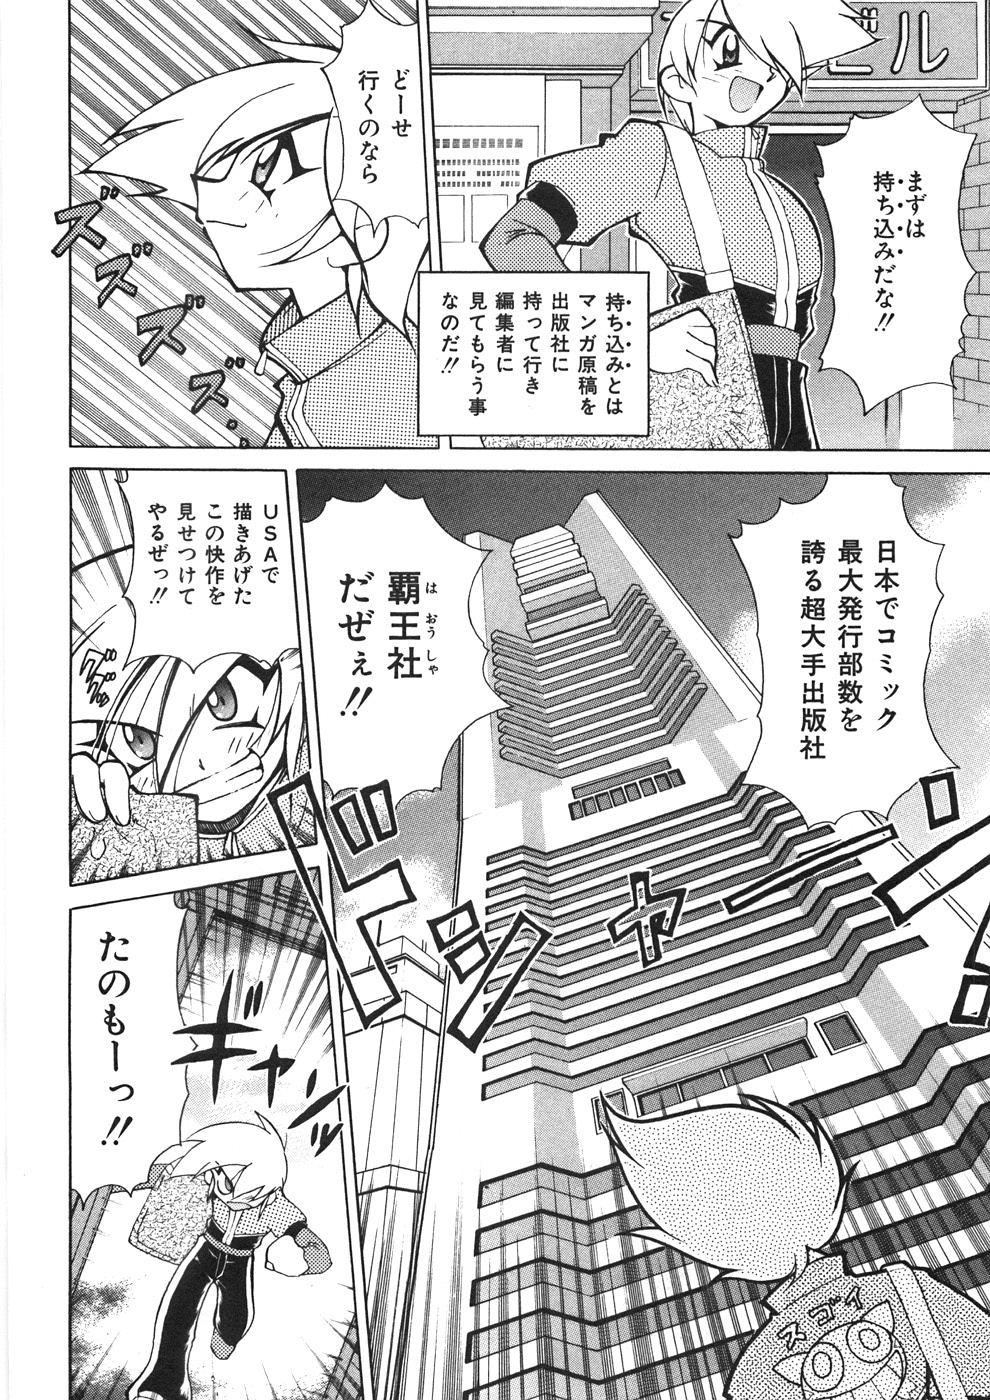 4some Chichichichi Banban Nice - Page 11